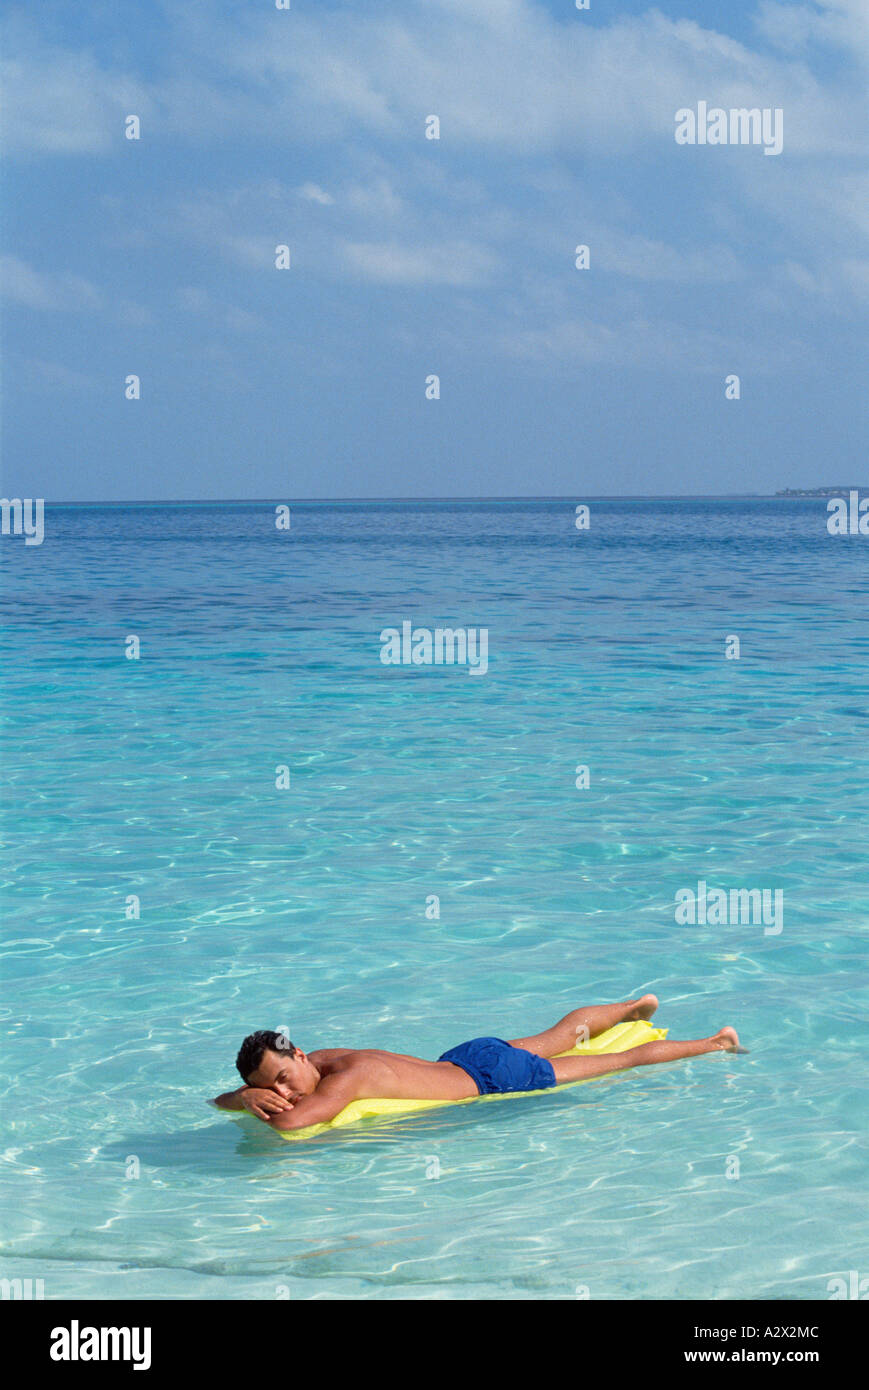 Maldive. Giovane uomo in costume da bagno sul letto aria galleggianti su acqua cristallina. Foto Stock